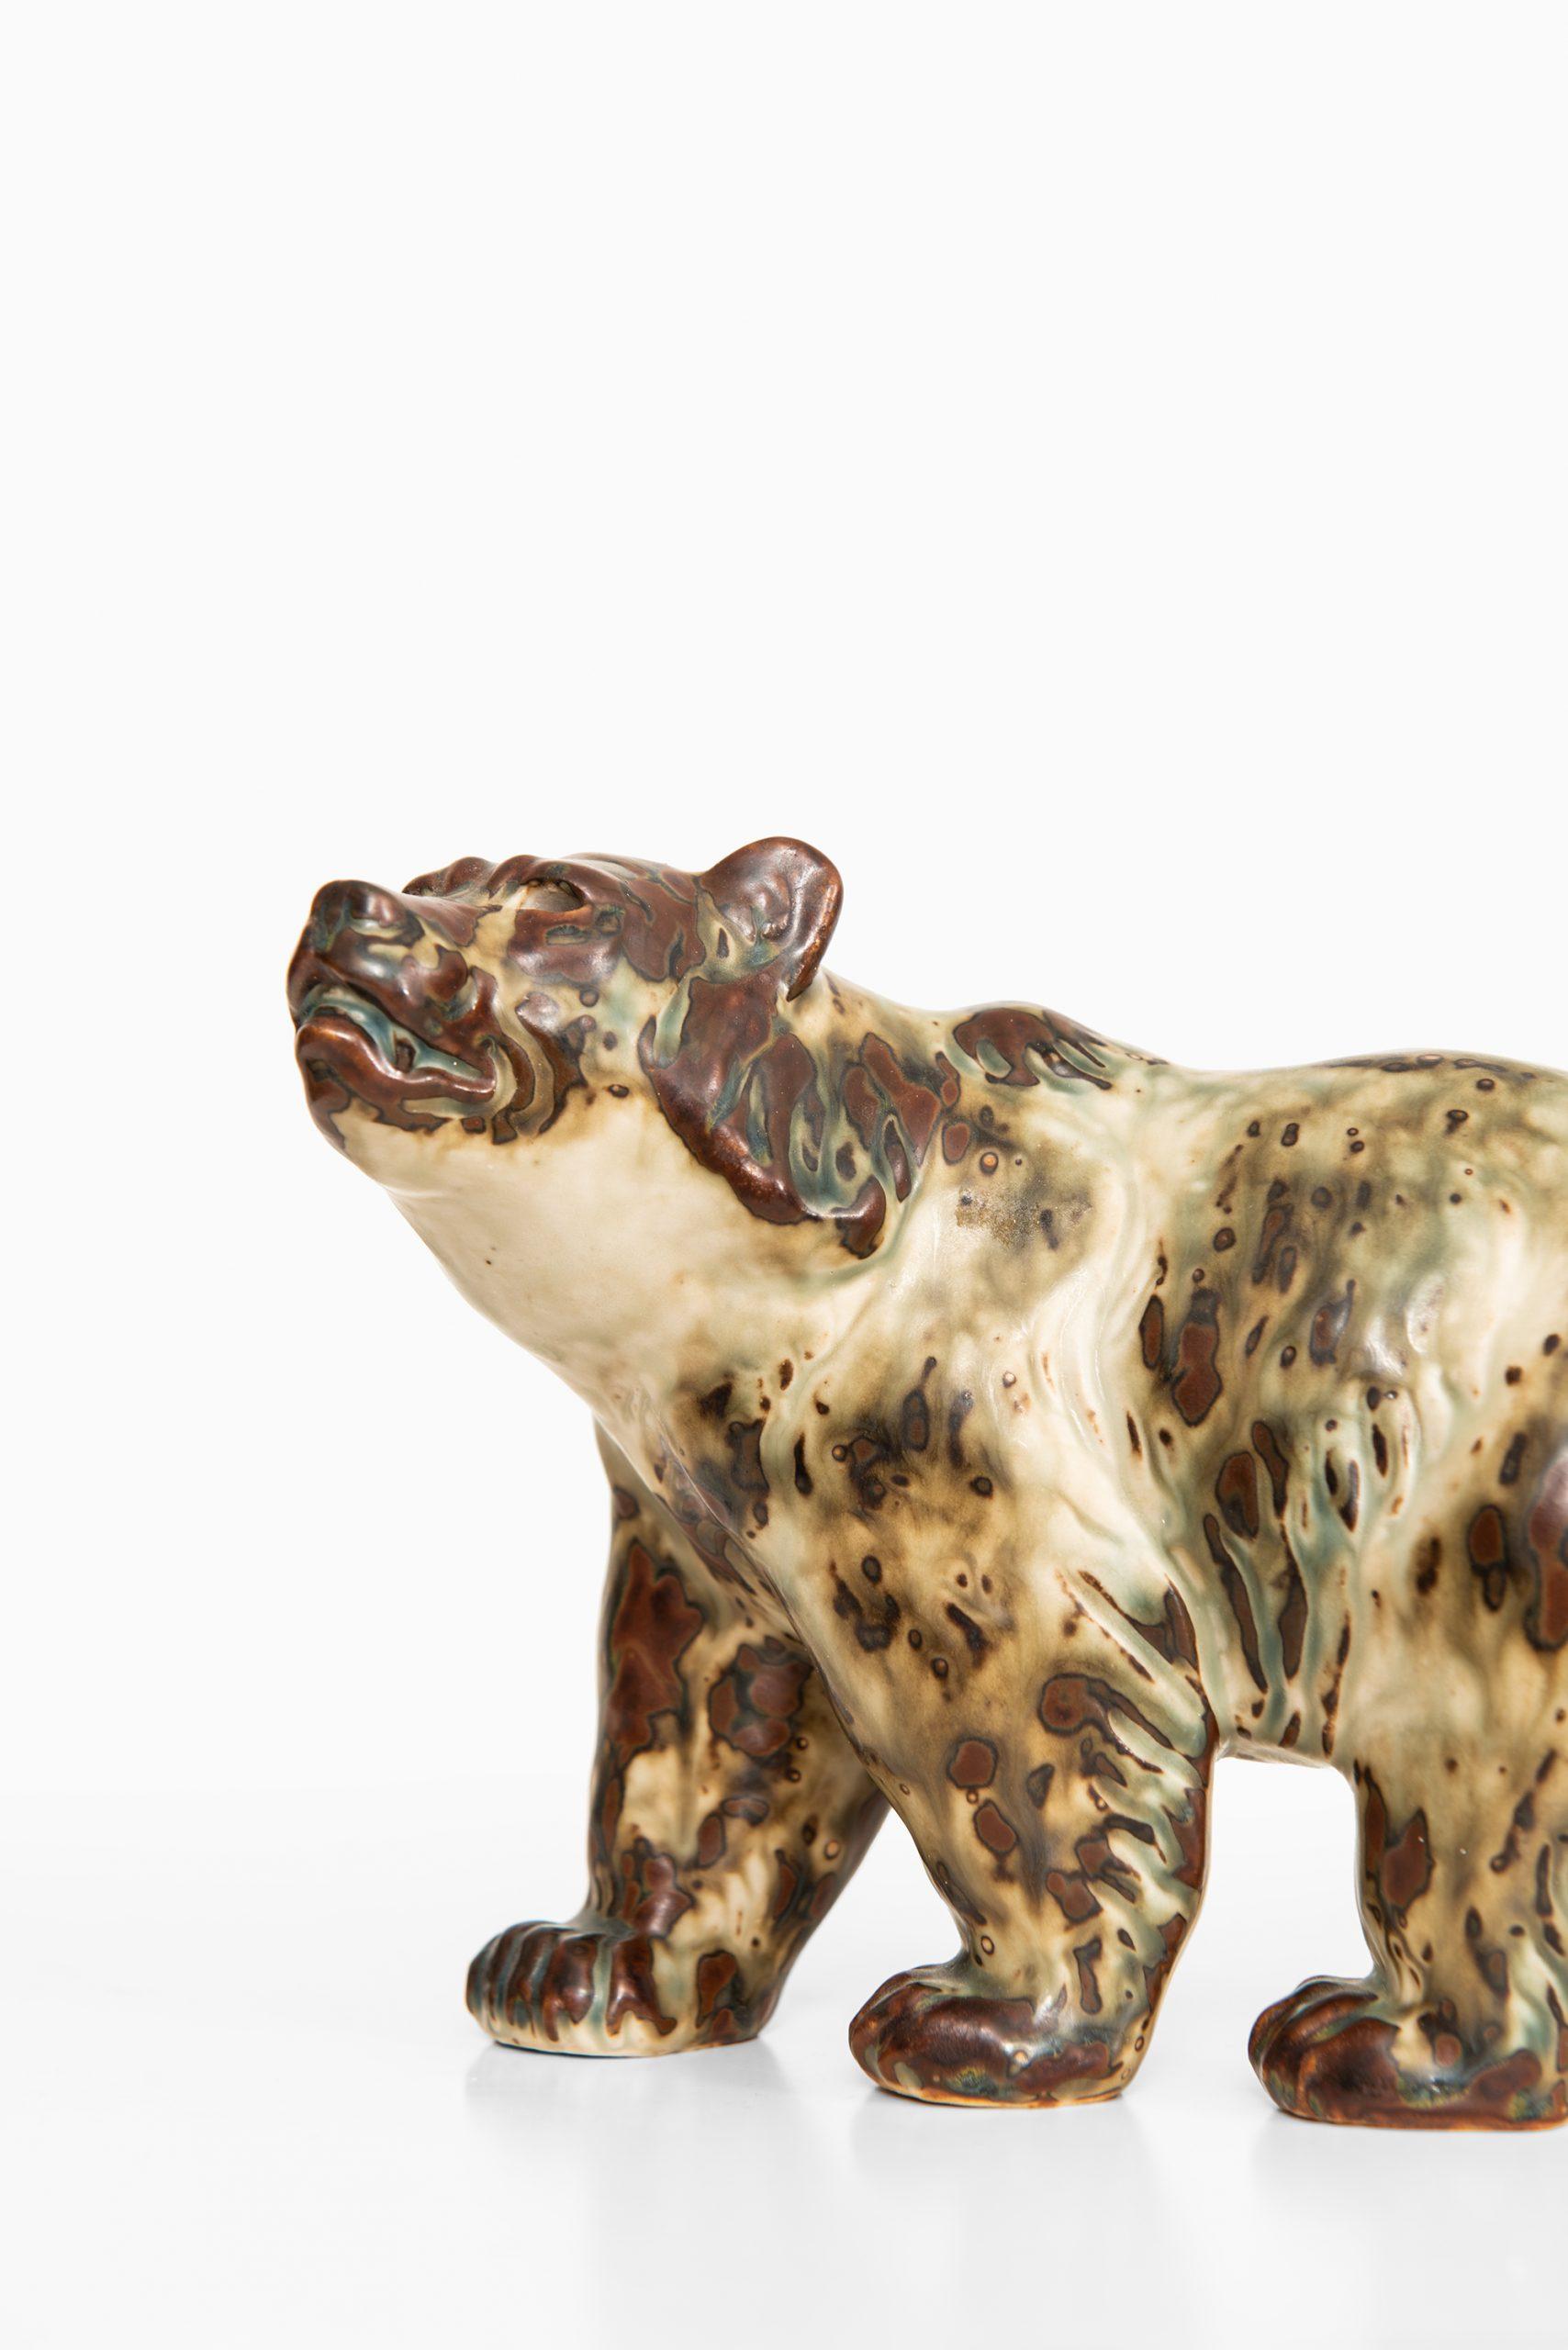 Ours en céramique n° 20155 conçu par Knud Kyhn. Produit par Royal Copenhagen au Danemark.